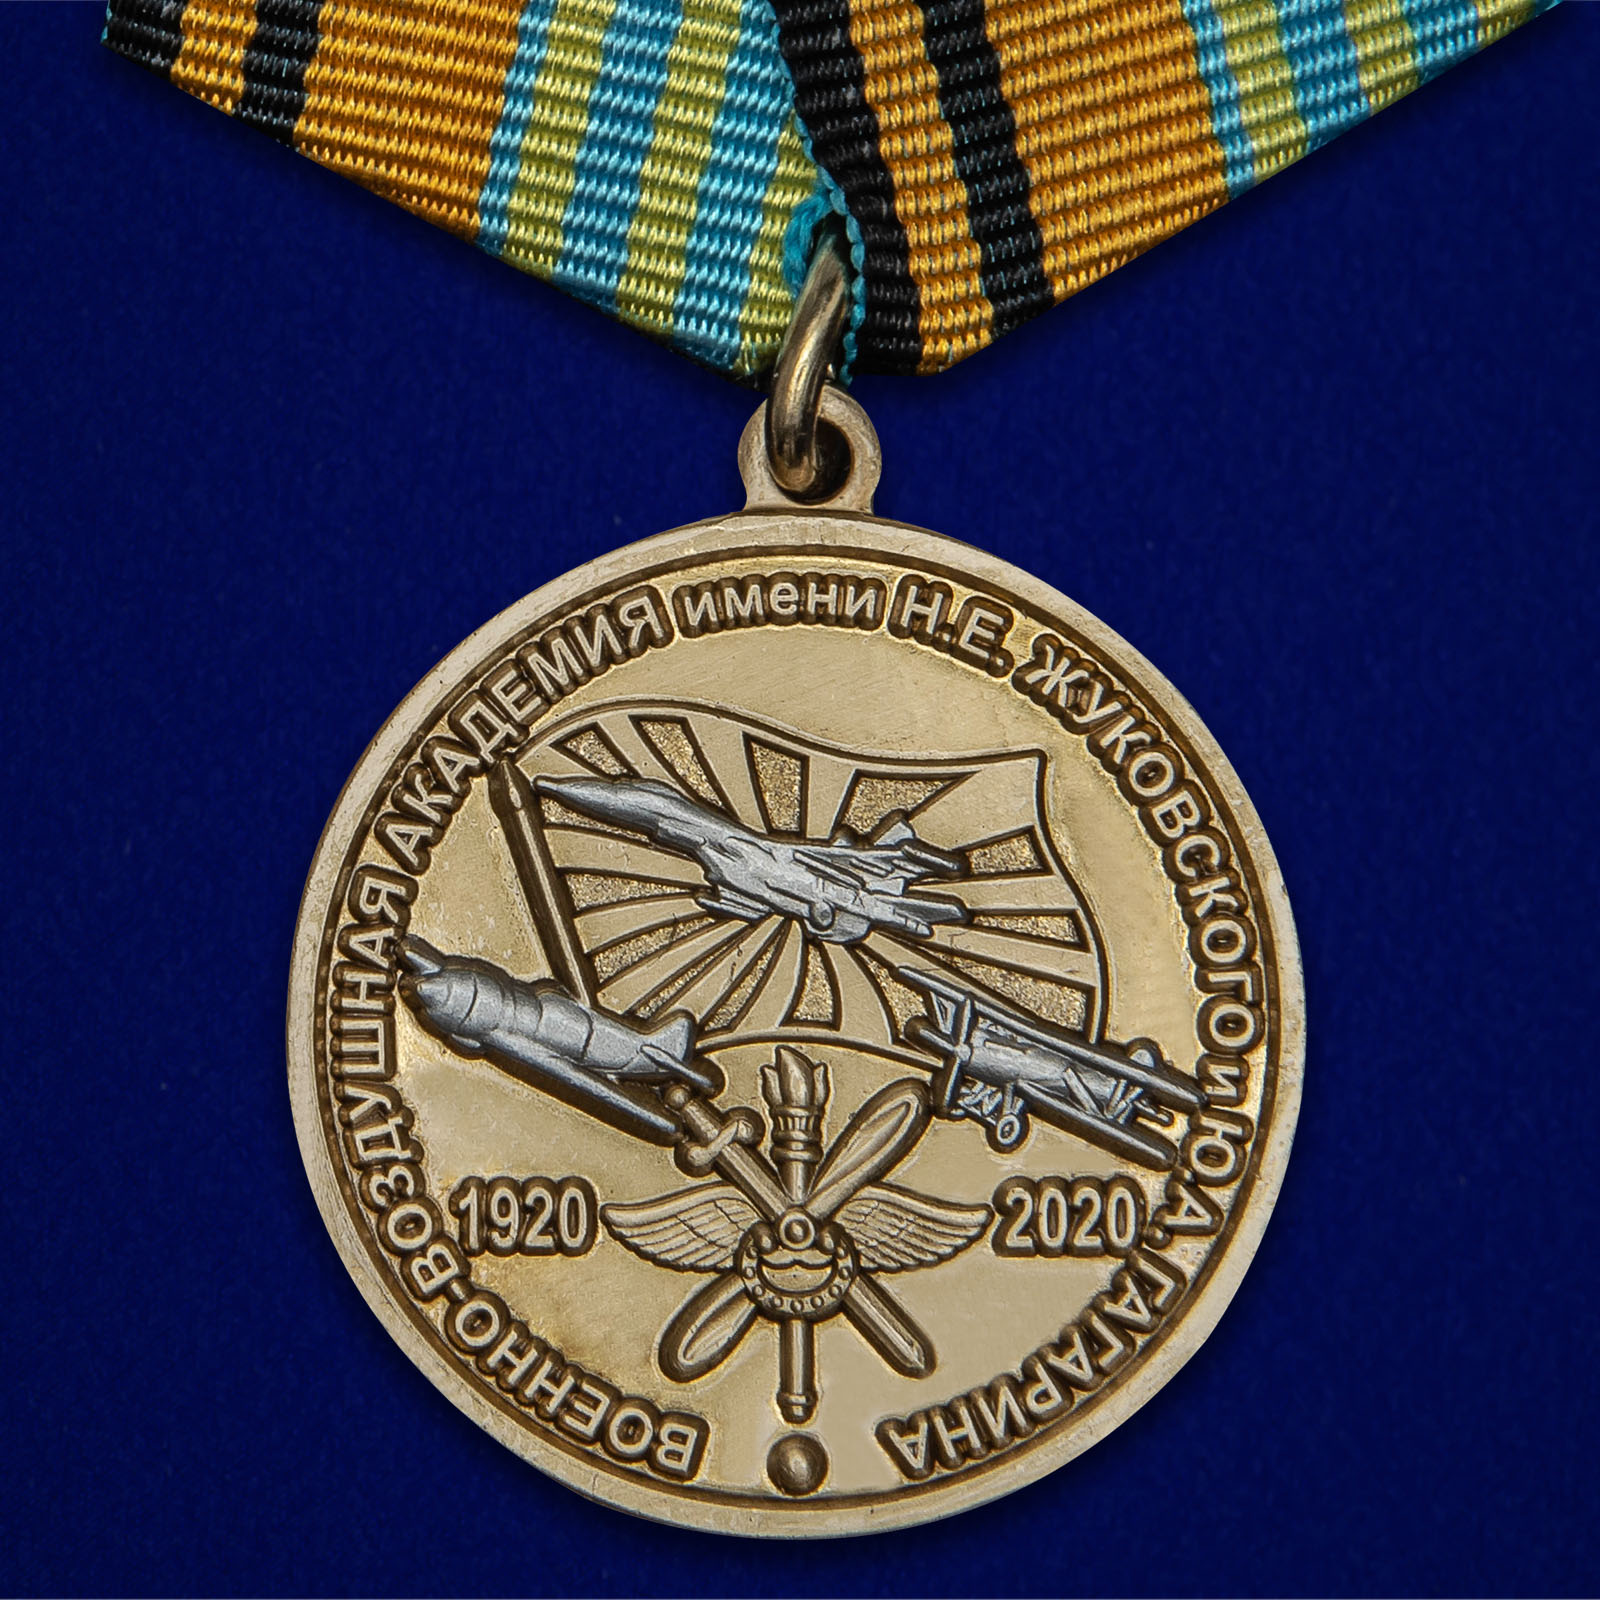 Купить медаль 100 лет Военно-воздушной академии им. Н.Е. Жуковского и Ю.А. Гагарина на подставке в подарок